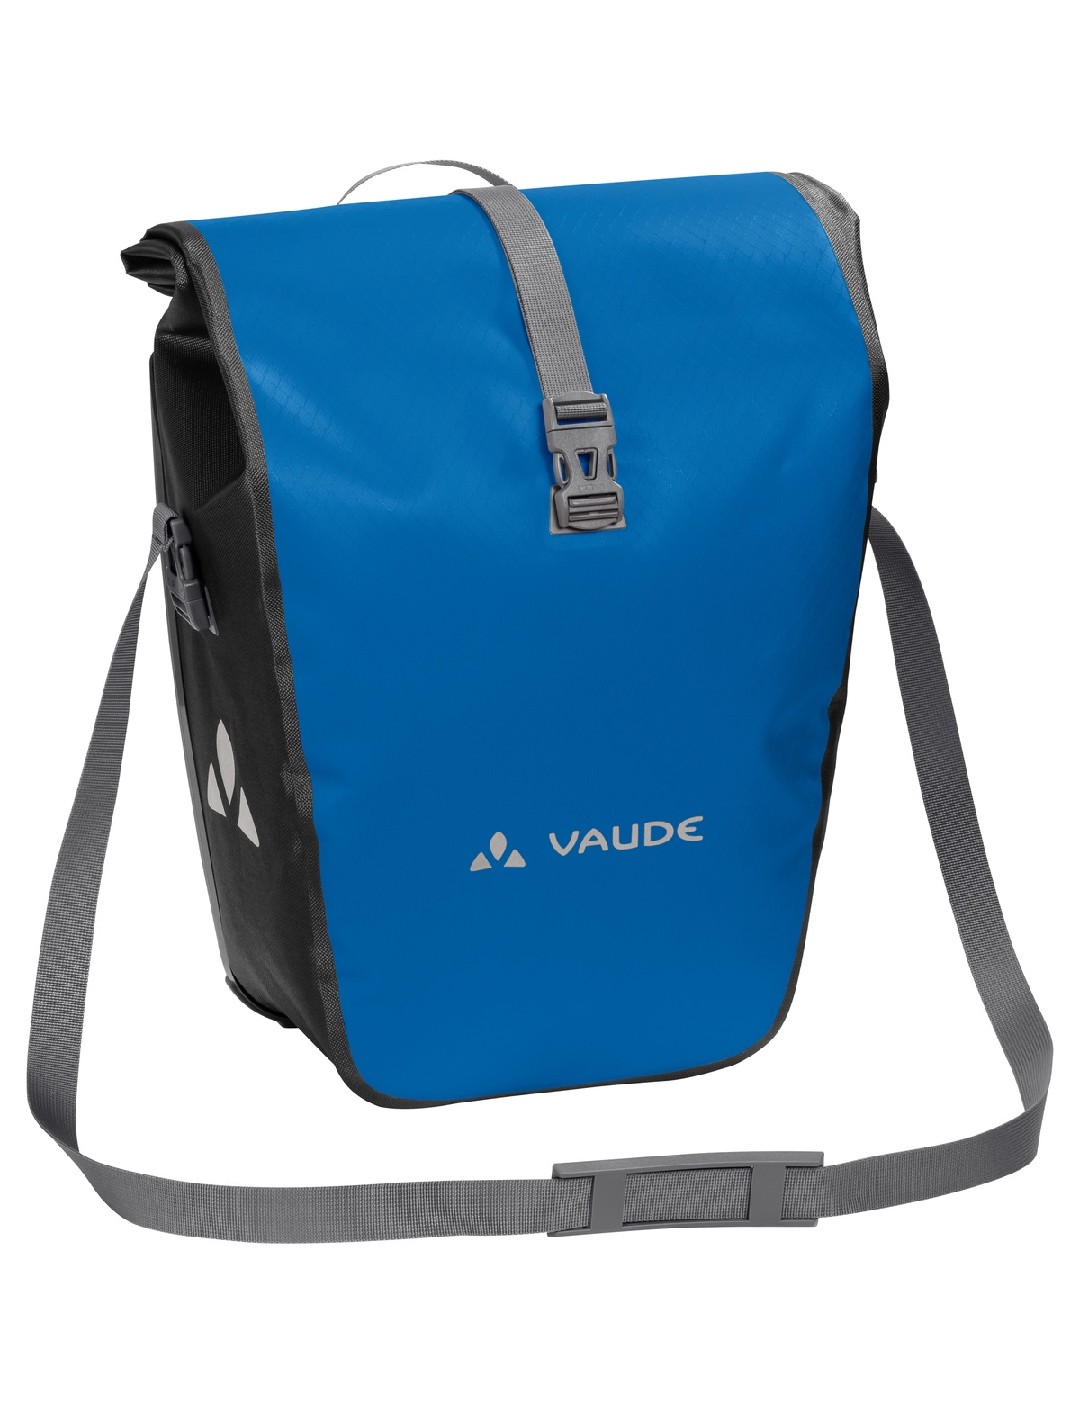 VAUDE Aqua Back, blue - Bild 1